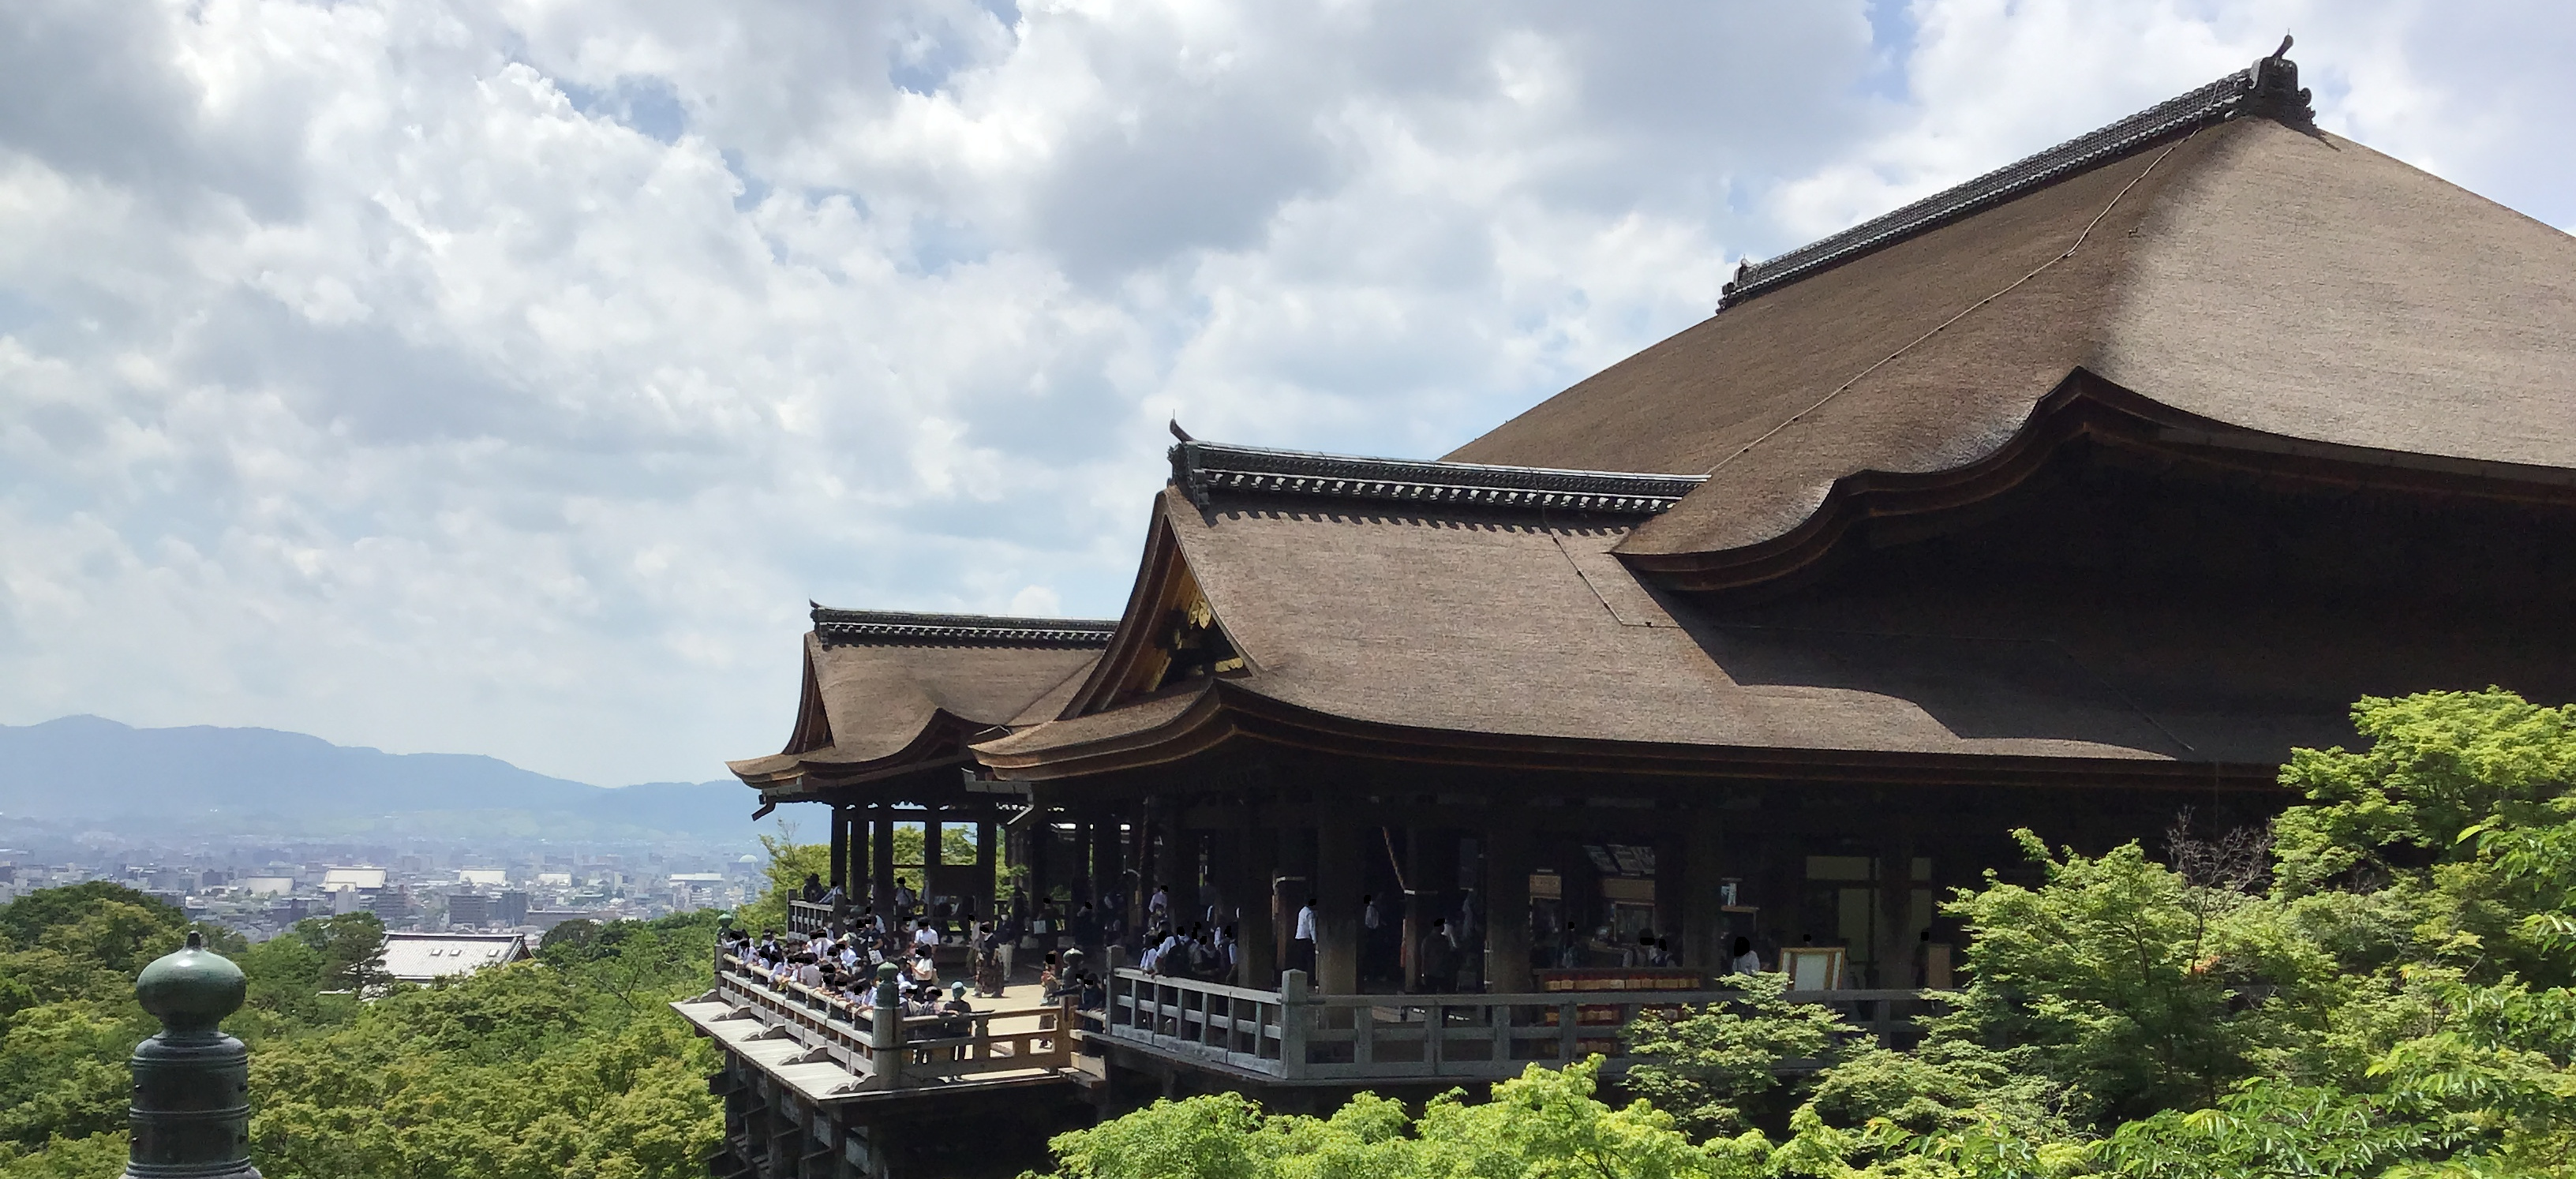 A wide angle shot of Kiyomizu Temple